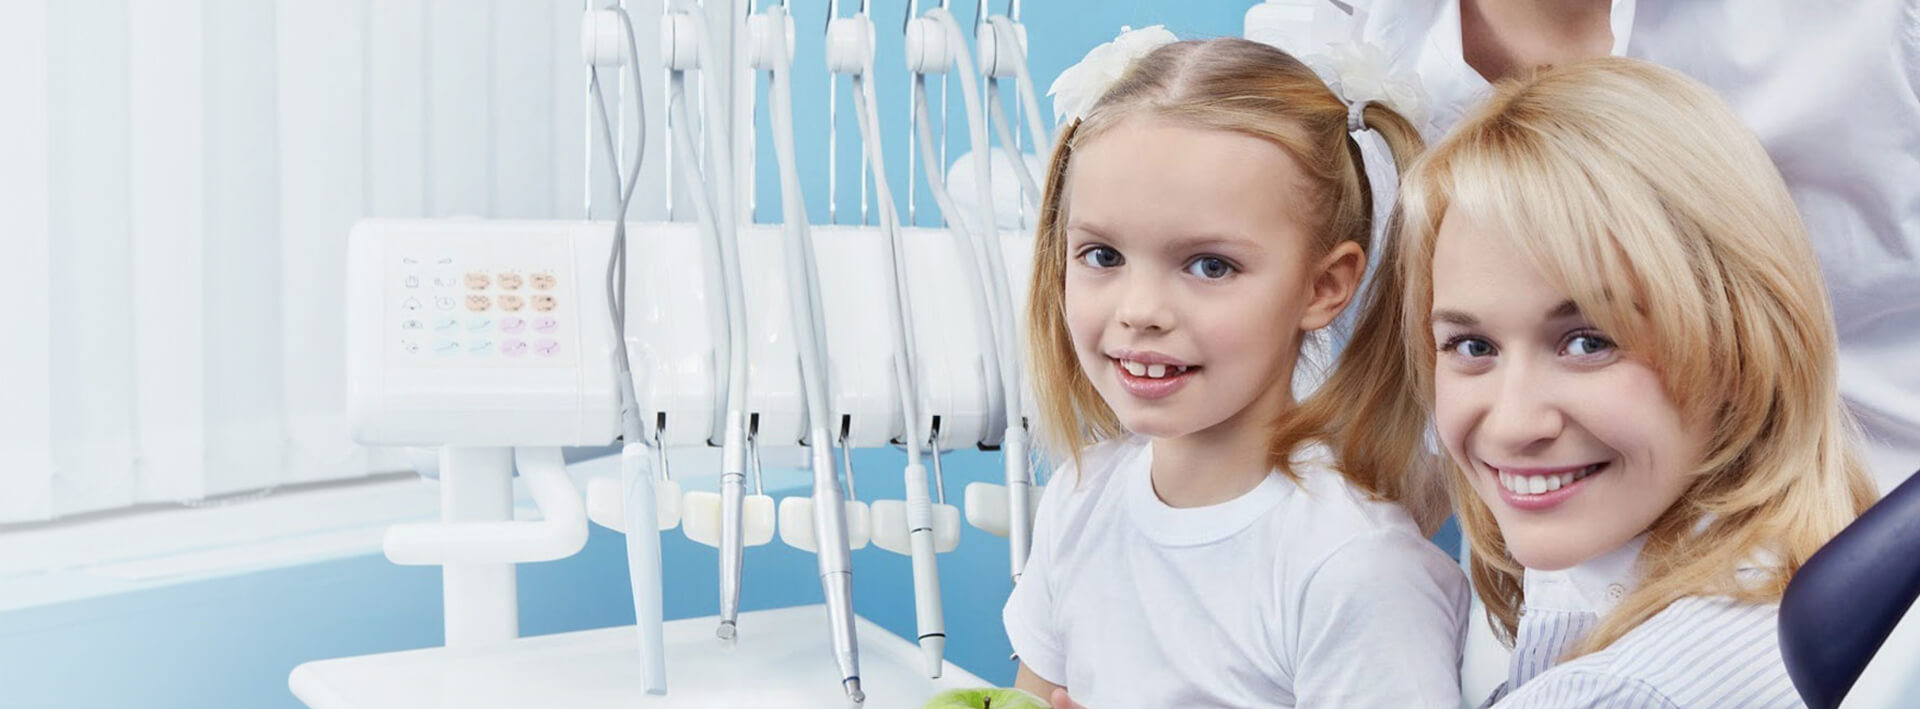 детские стоматологии в томске бесплатные